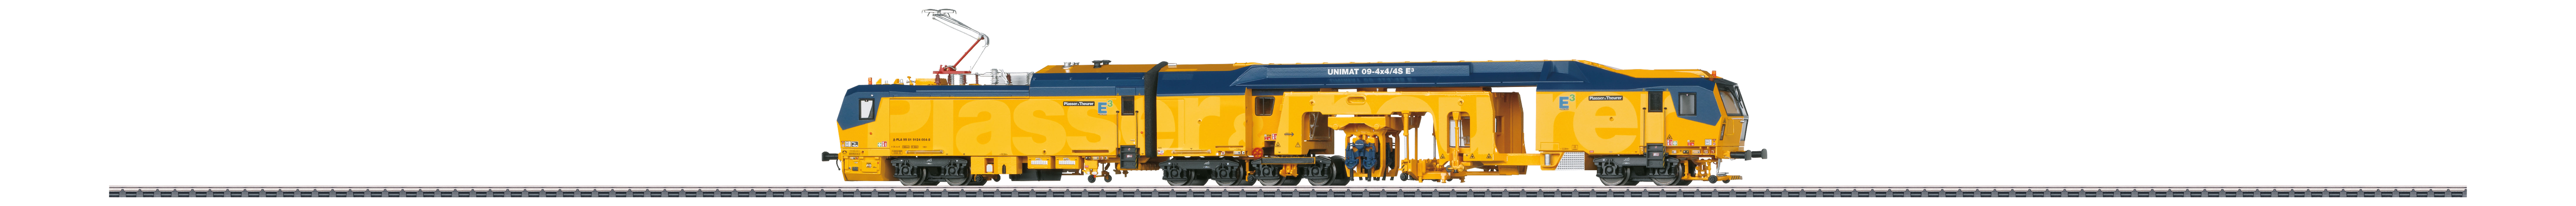 Unimat 09-4x4/4S E³ Schienen- Stopfmaschine Plasser&Theurer DCC/MM digital mit Sound und beweglichen Funktionselementen